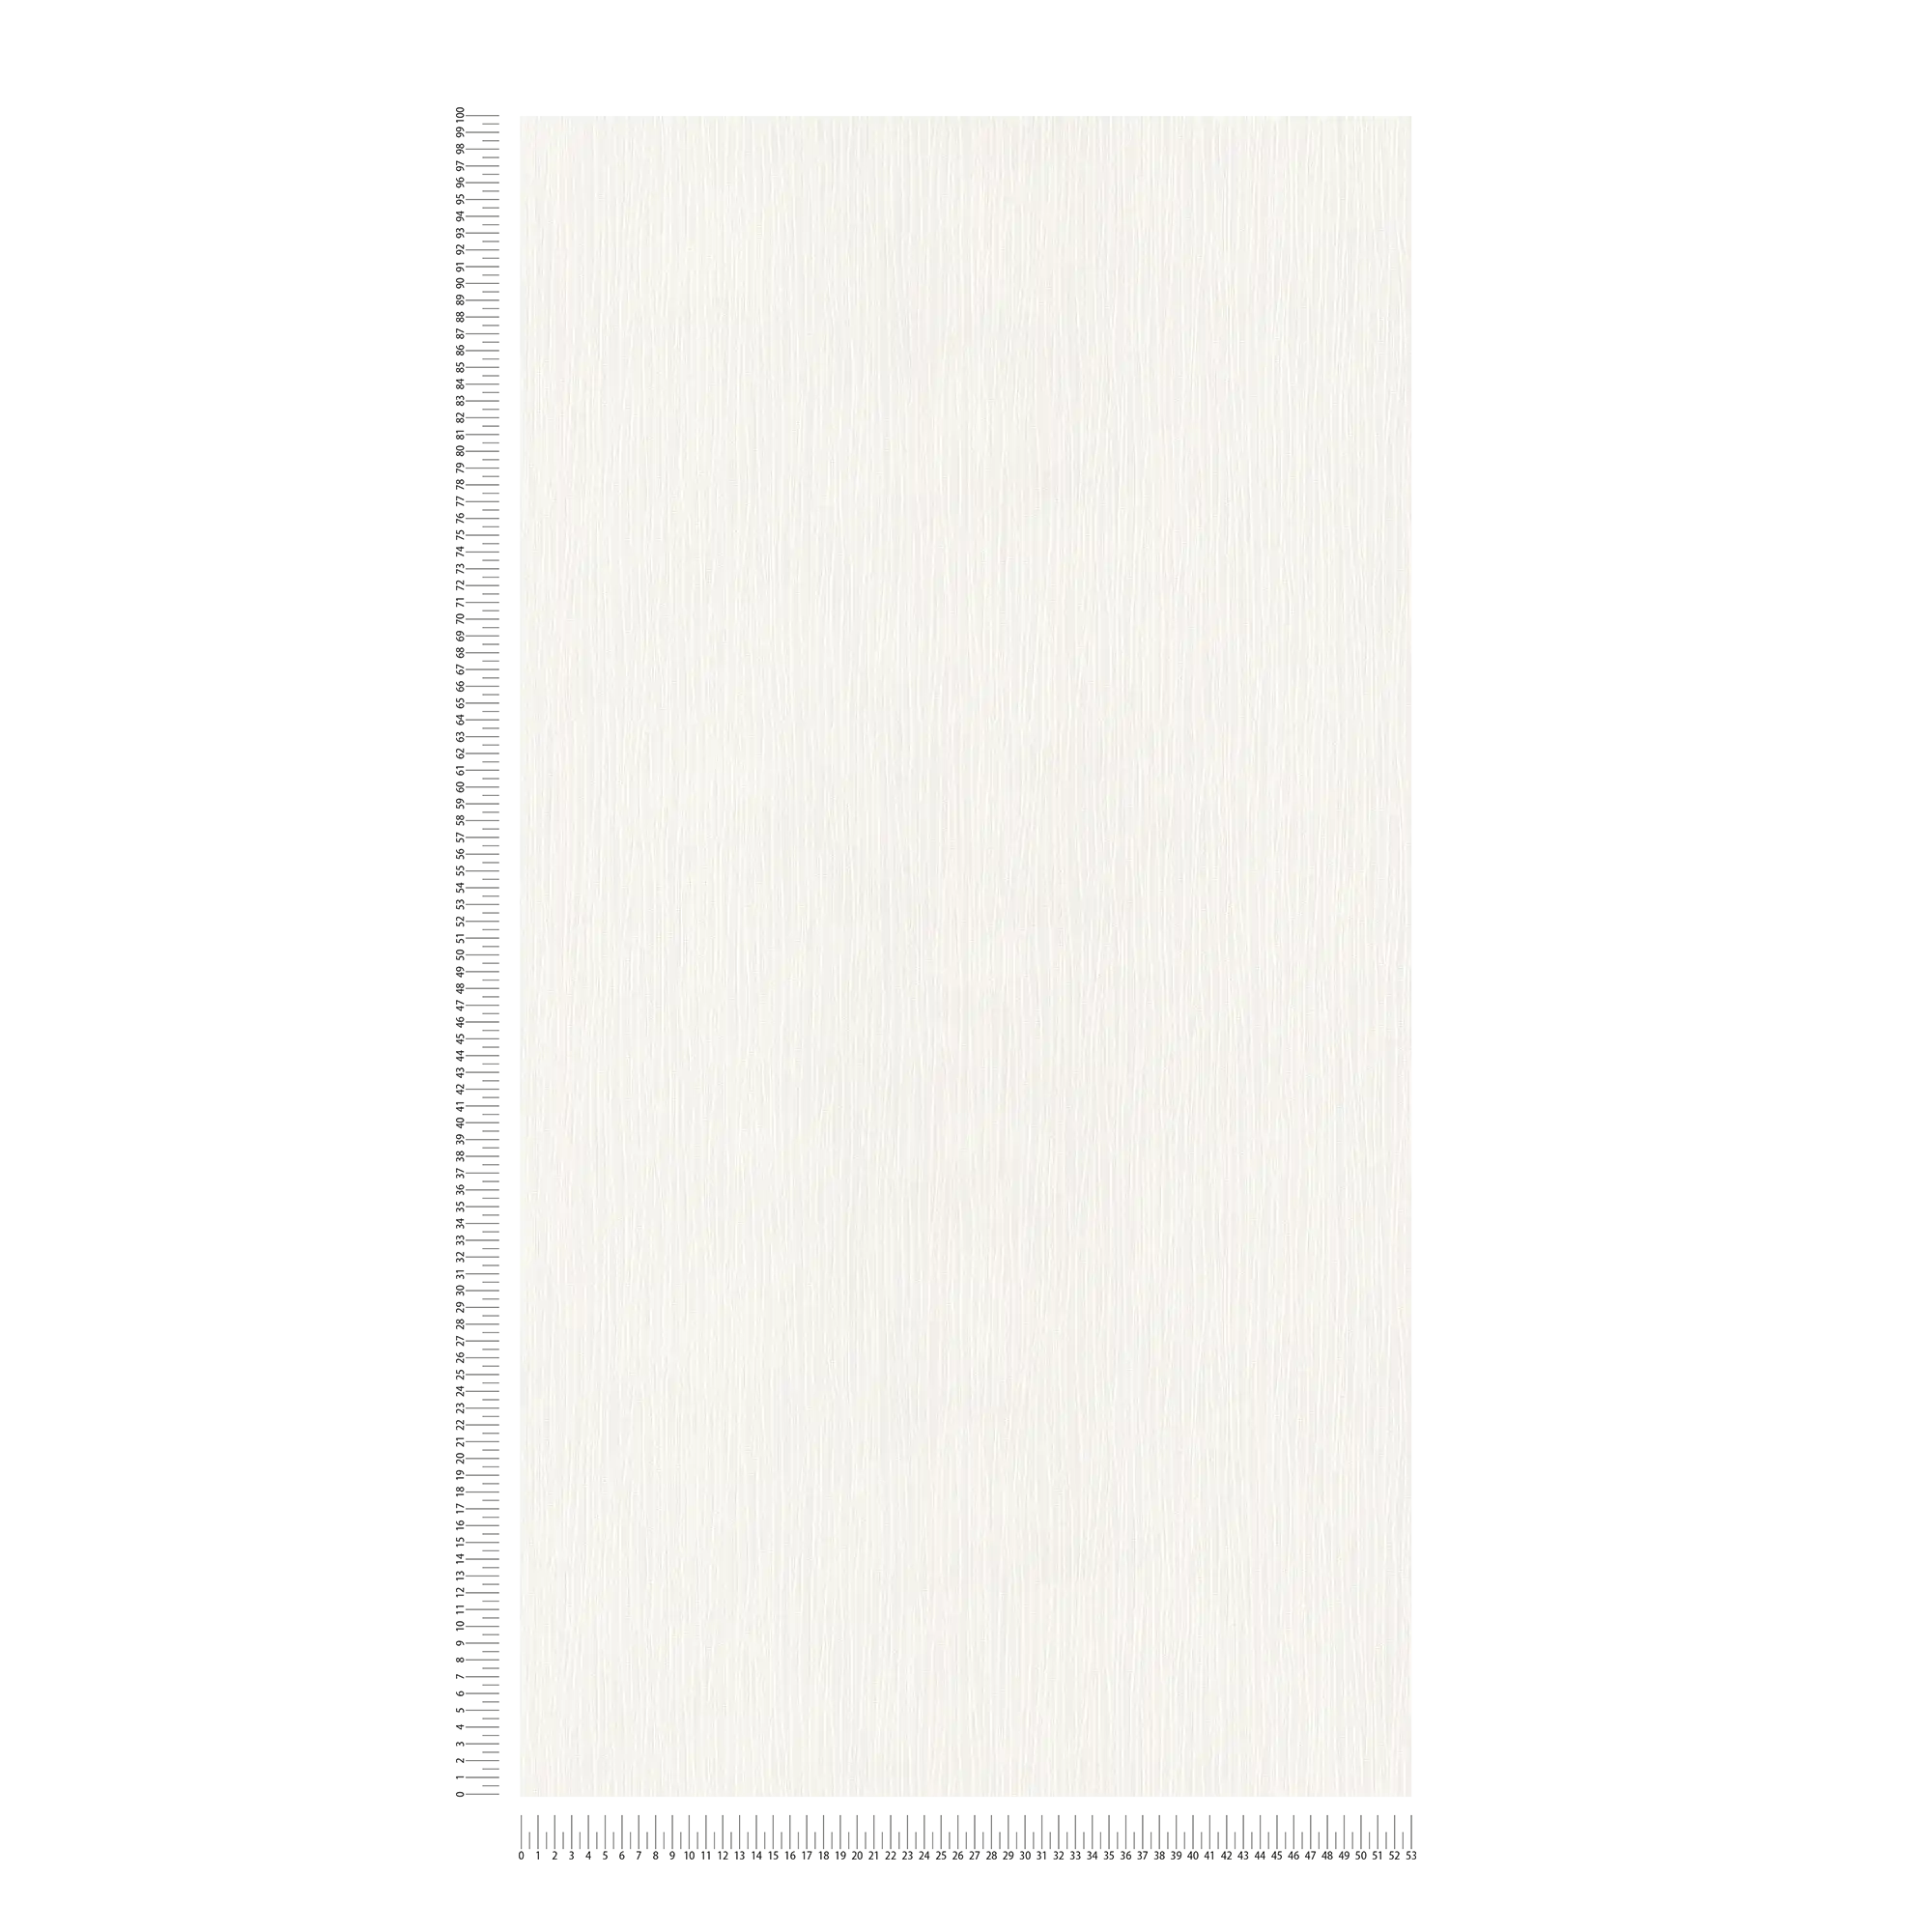             Papel pintado blanco con estructura de líneas
        